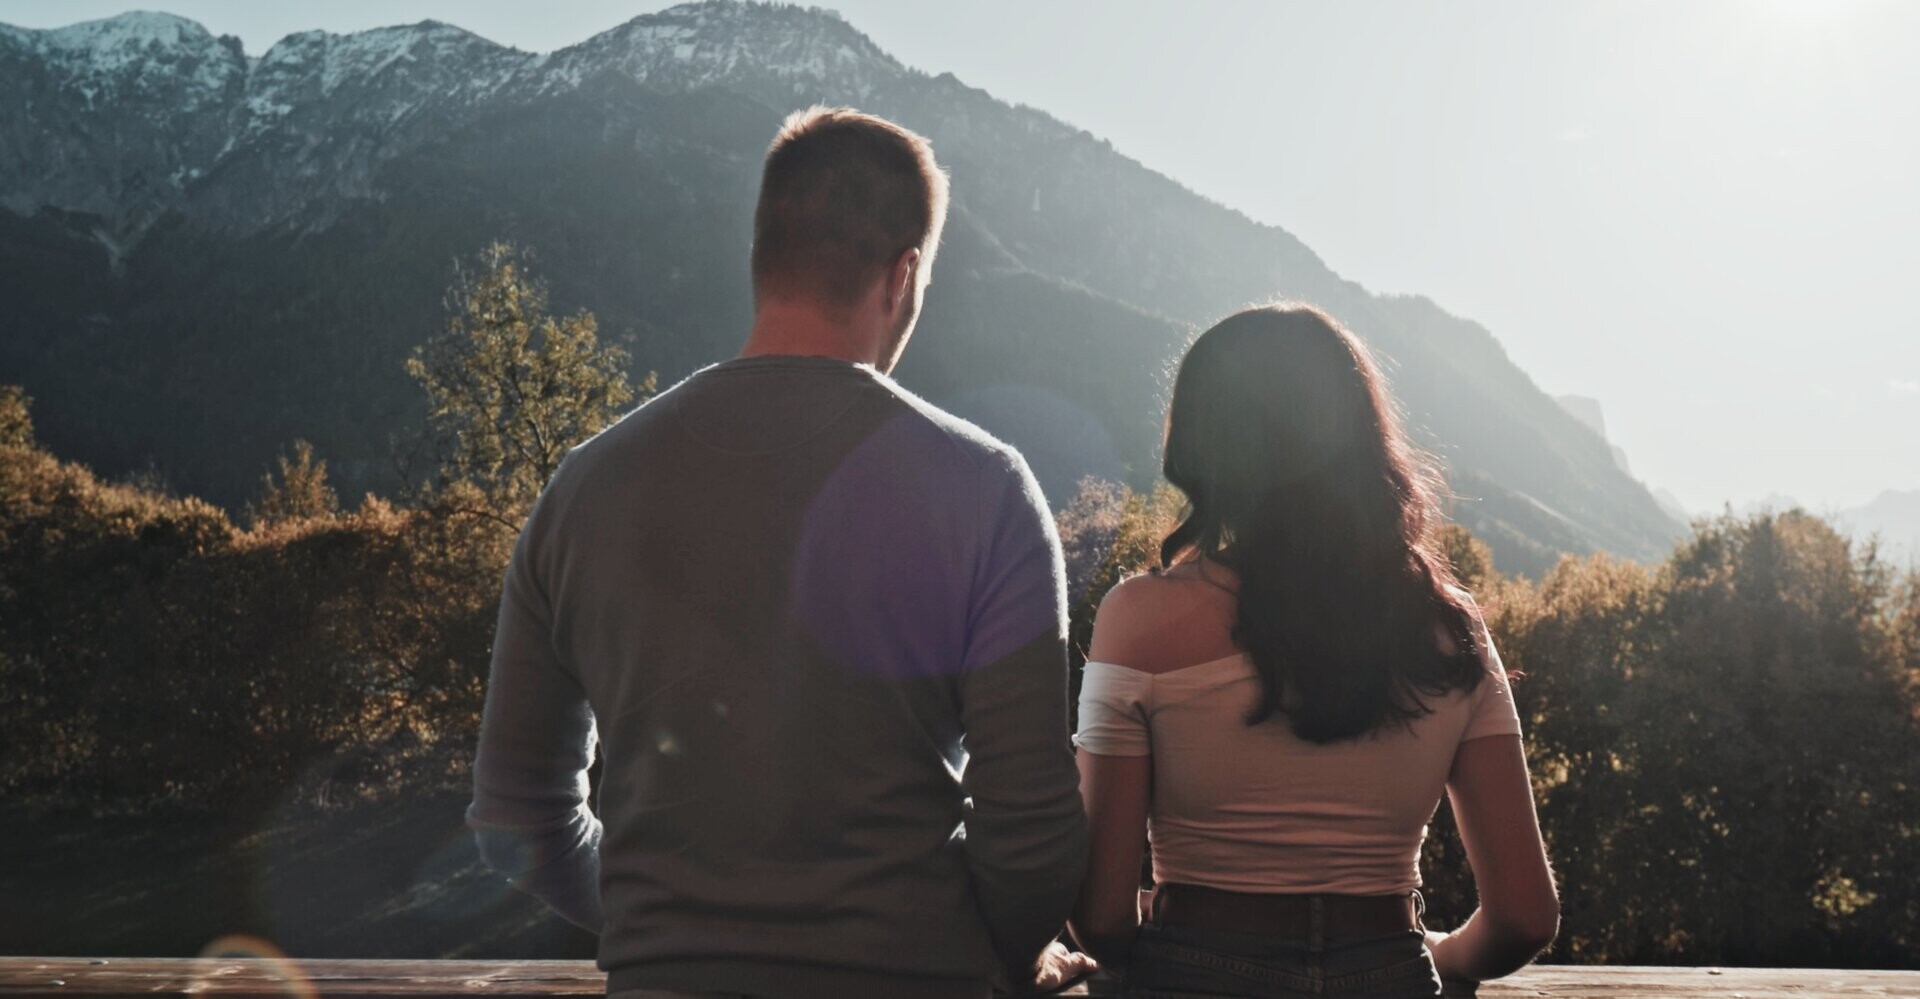 Romantische Auszeit für Zwei mit Panoramablick in die bayerischen Berge.